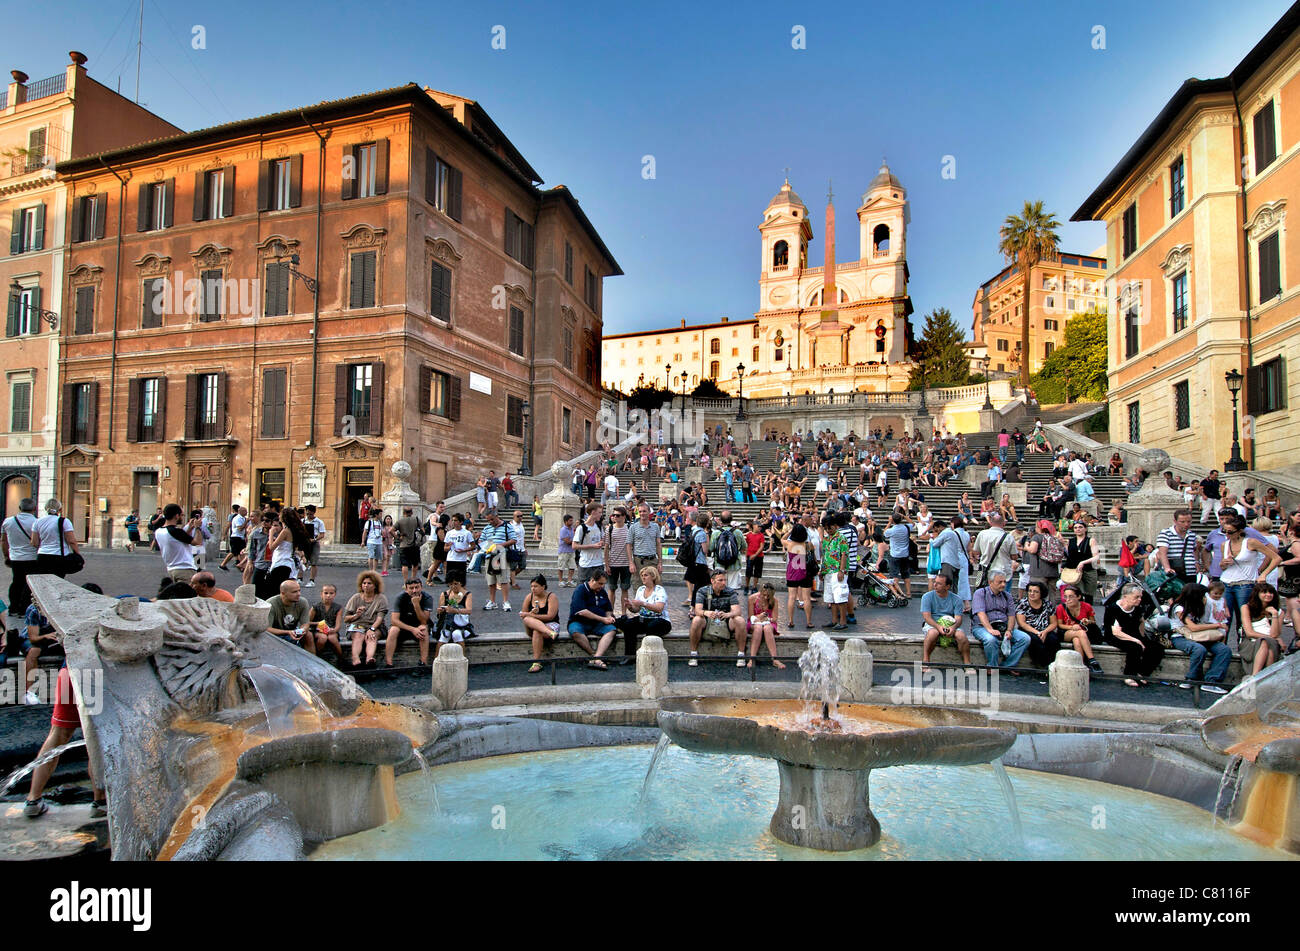 Spanische Treppe, Rom - Piazza di Spagna und Fontana della Barcaccia Brunnen mit Touristen in der Abenddämmerung Stockfoto